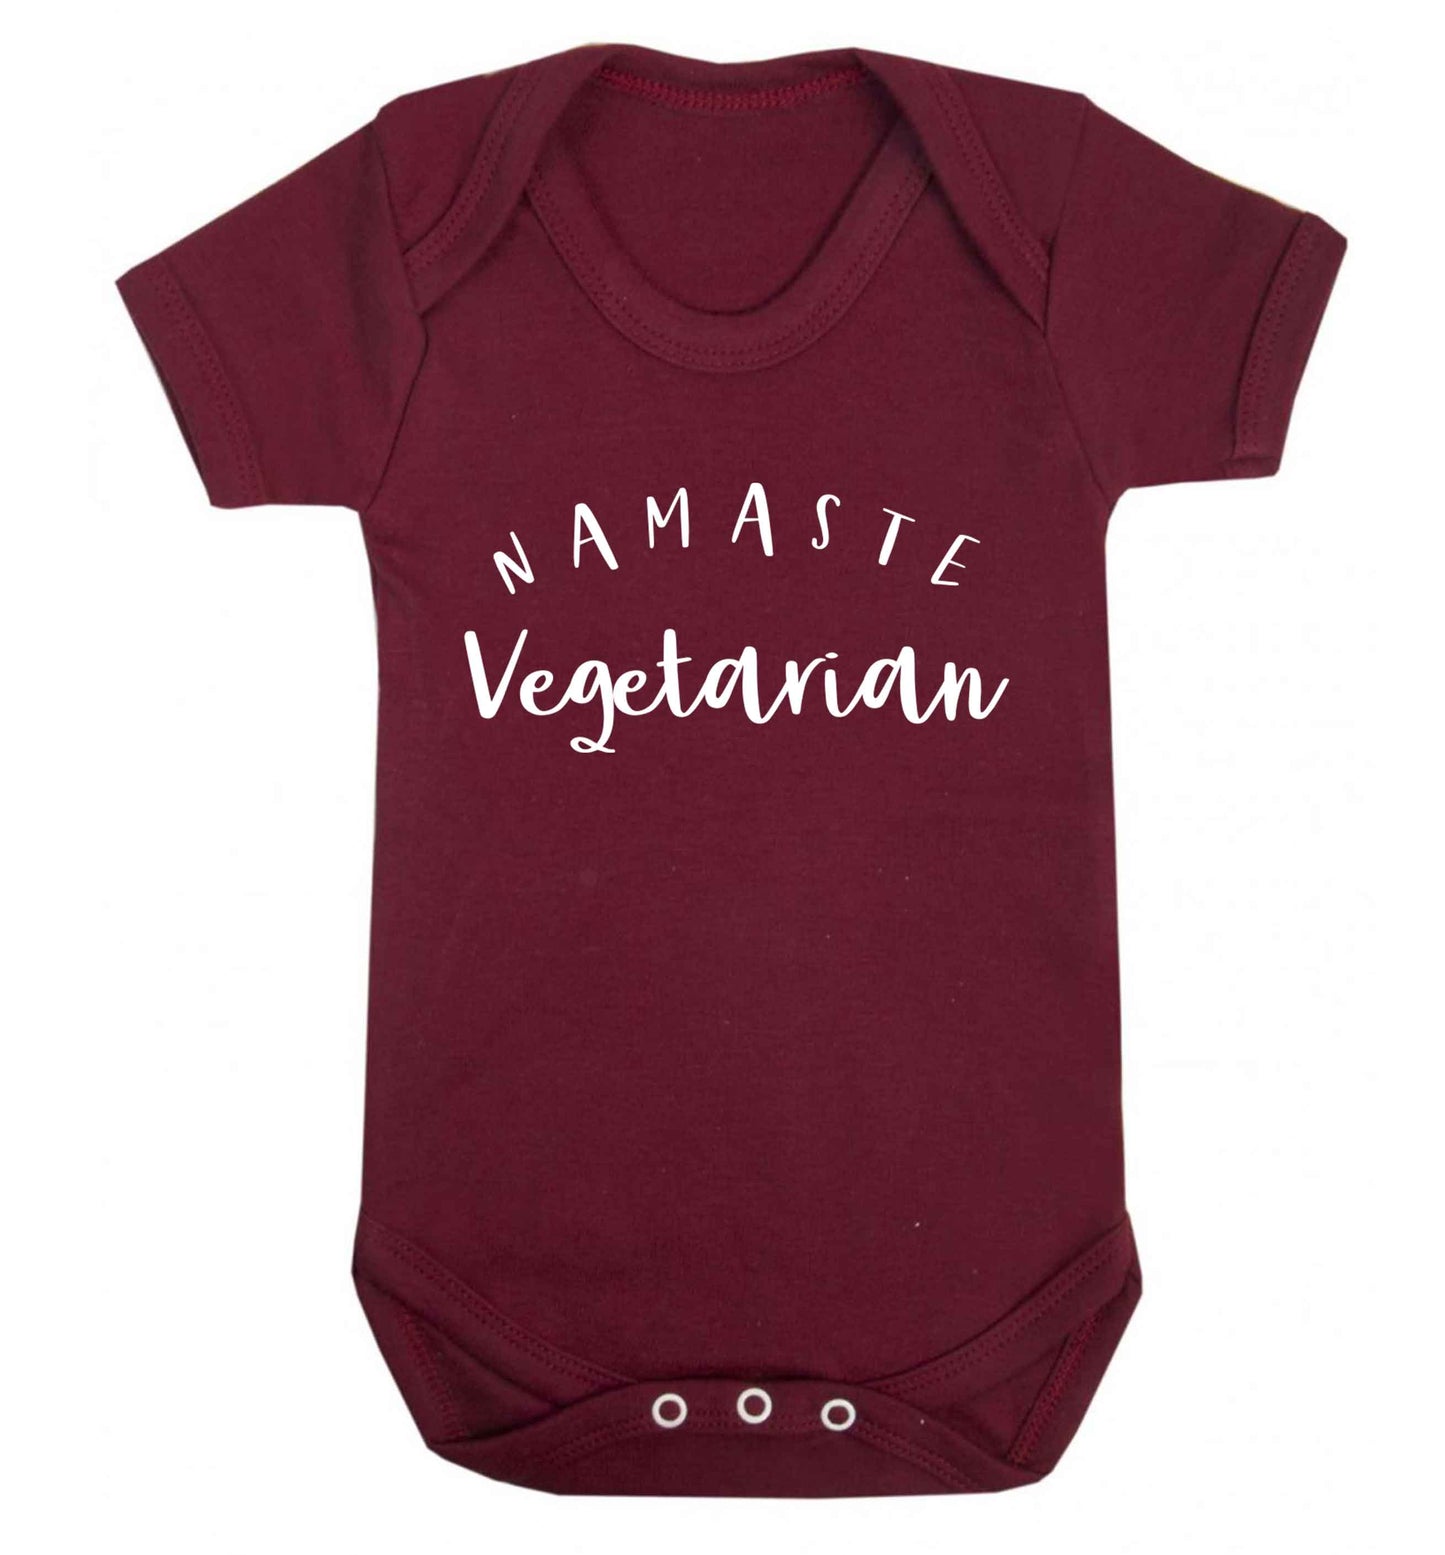 Namaste vegetarian Baby Vest maroon 18-24 months